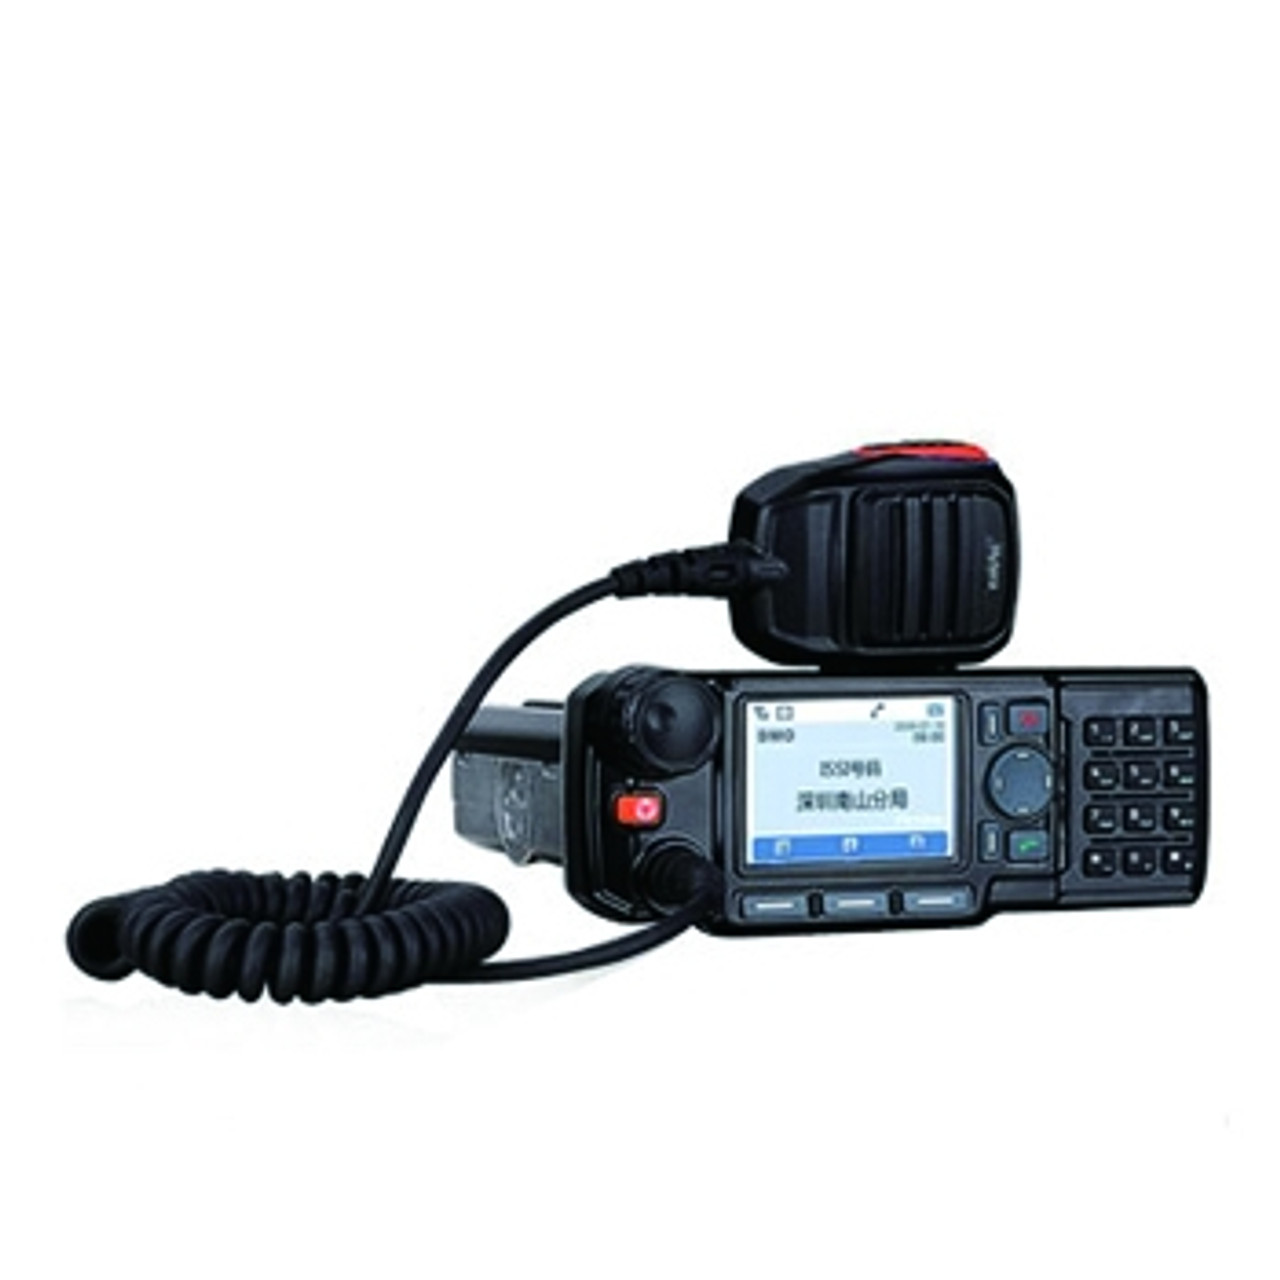 Radio bidirectionnelle L'orateur Microphone pour MD780 MD880t MT680 MD78xg  MD780 de l'autoradio un talkie-walkie - Chine Hytera MD780 Microphone et  Radio bidirectionnelle Microphone prix